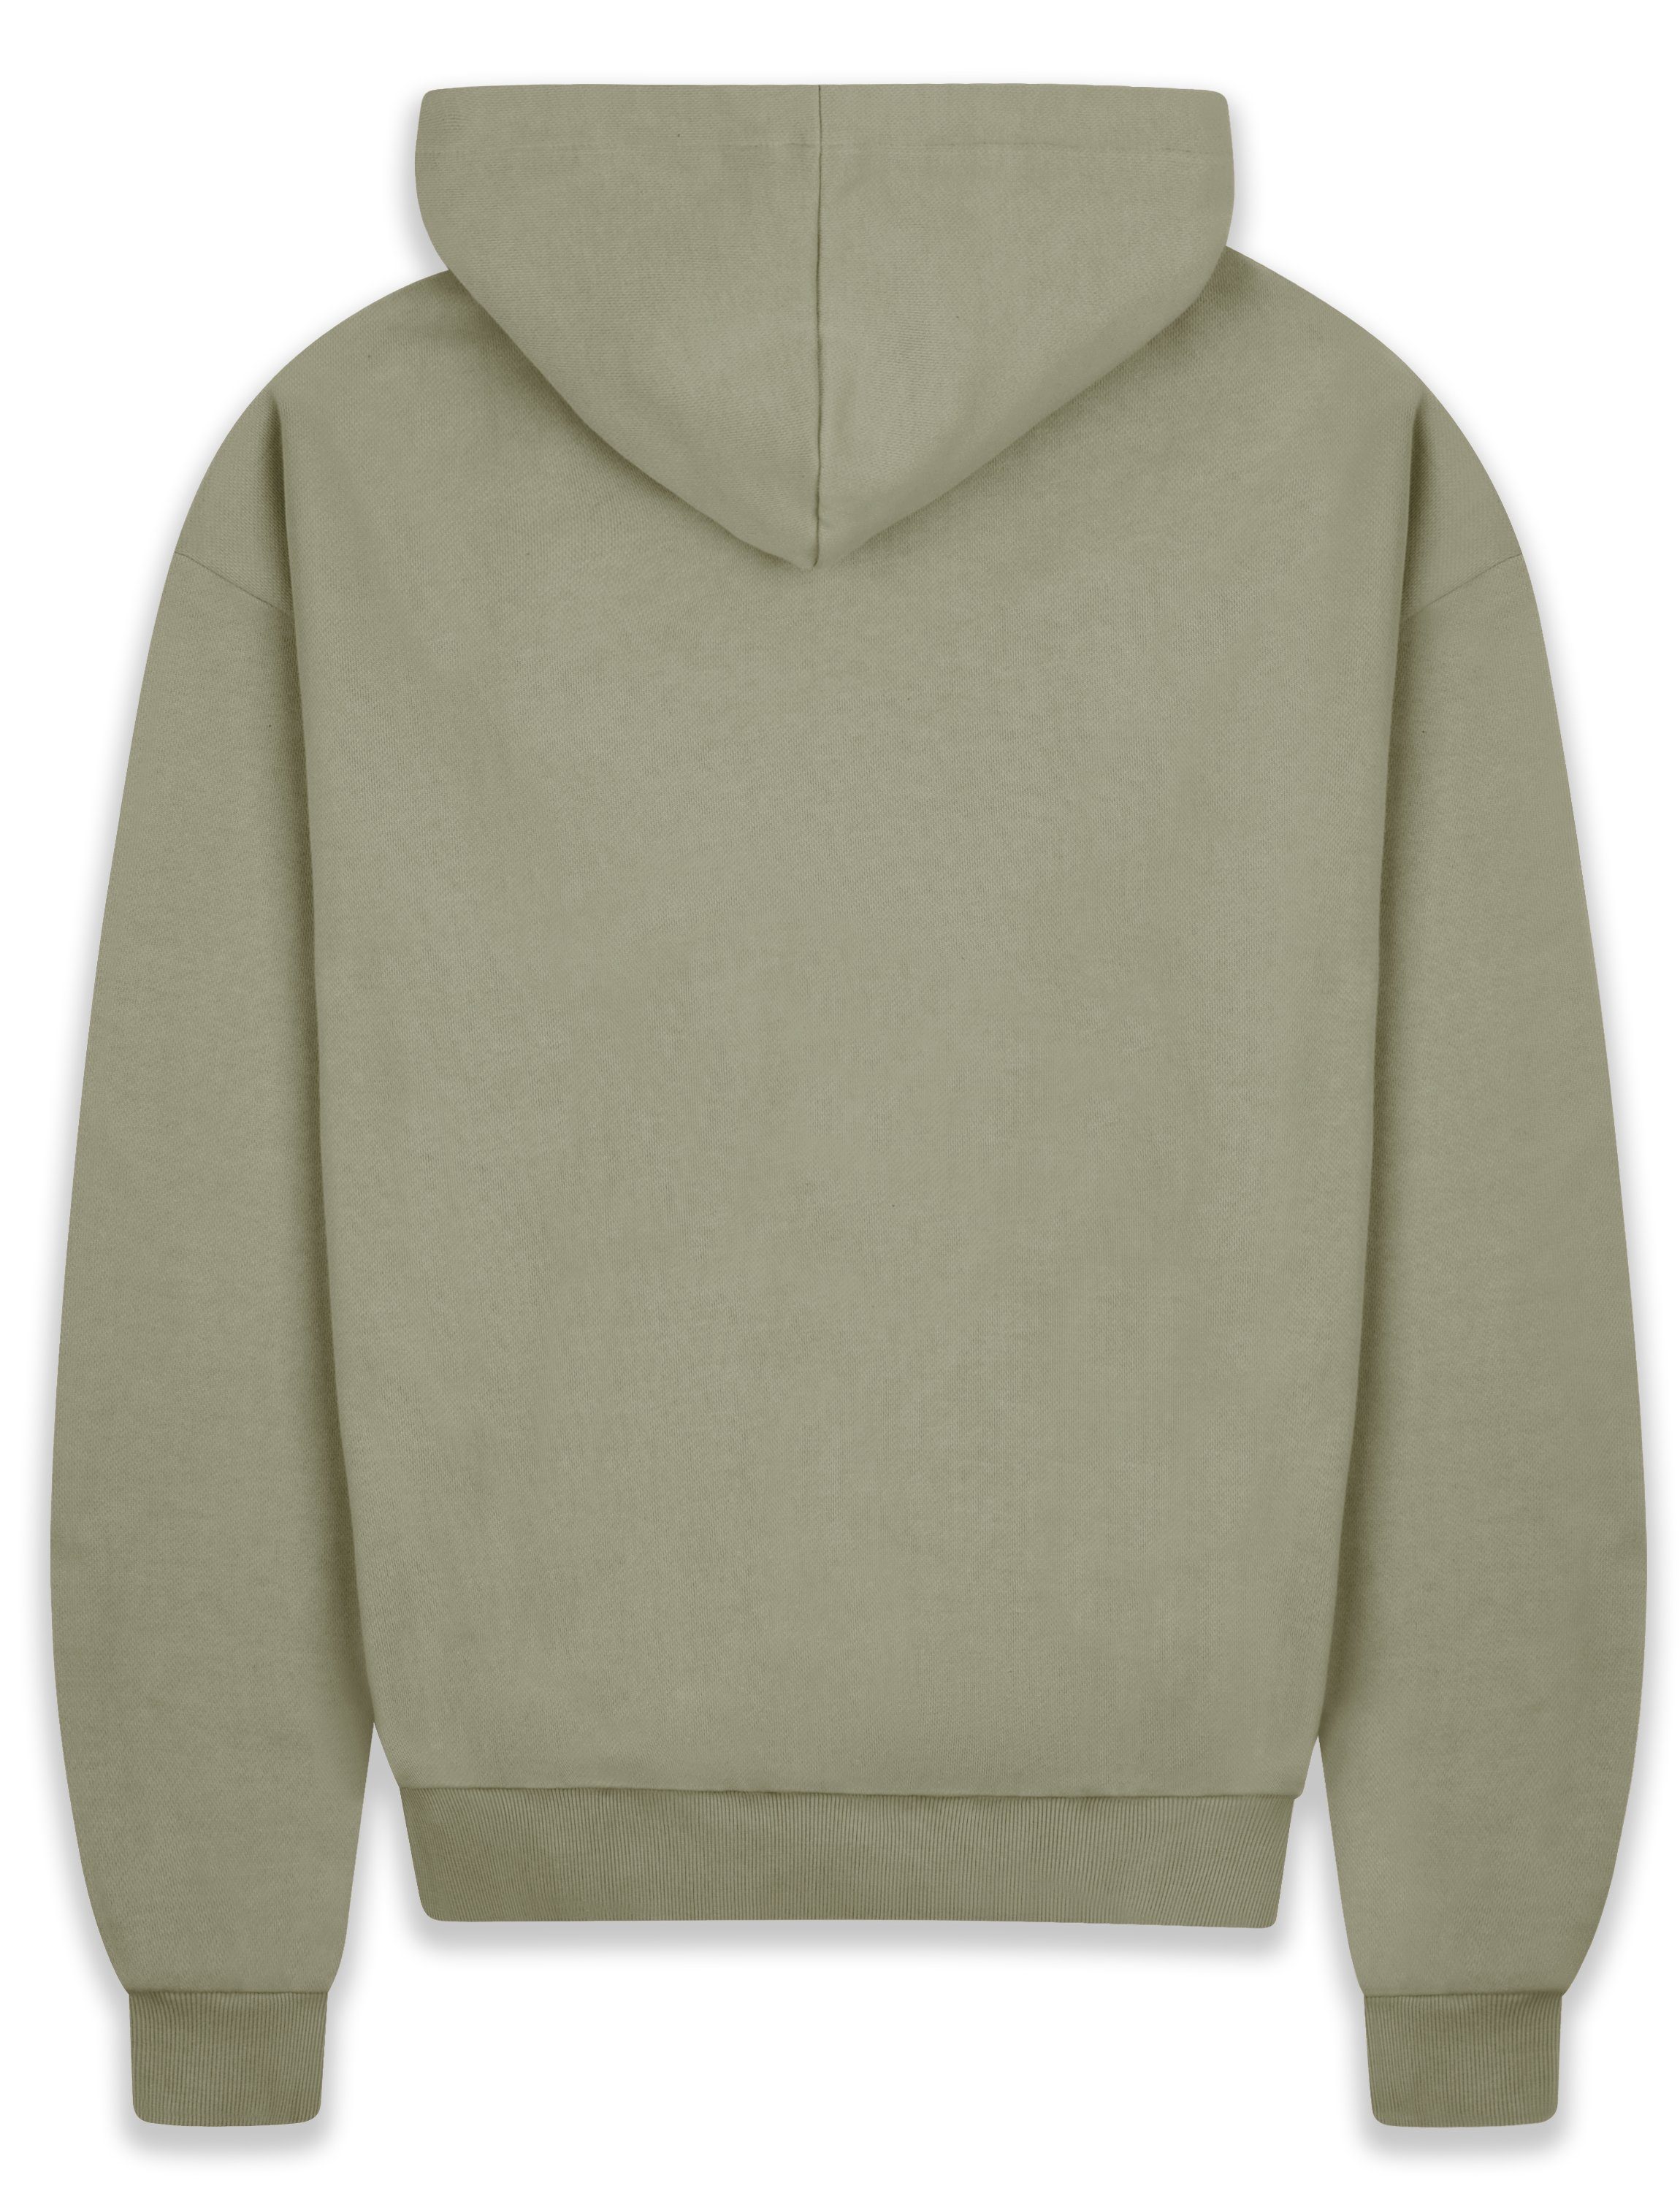 Hoodie GSM Dropsize Oversize Sweater Kapuzen-Pullover Hoodie 430 Heavy BR-H-1 Herren Herren Olive